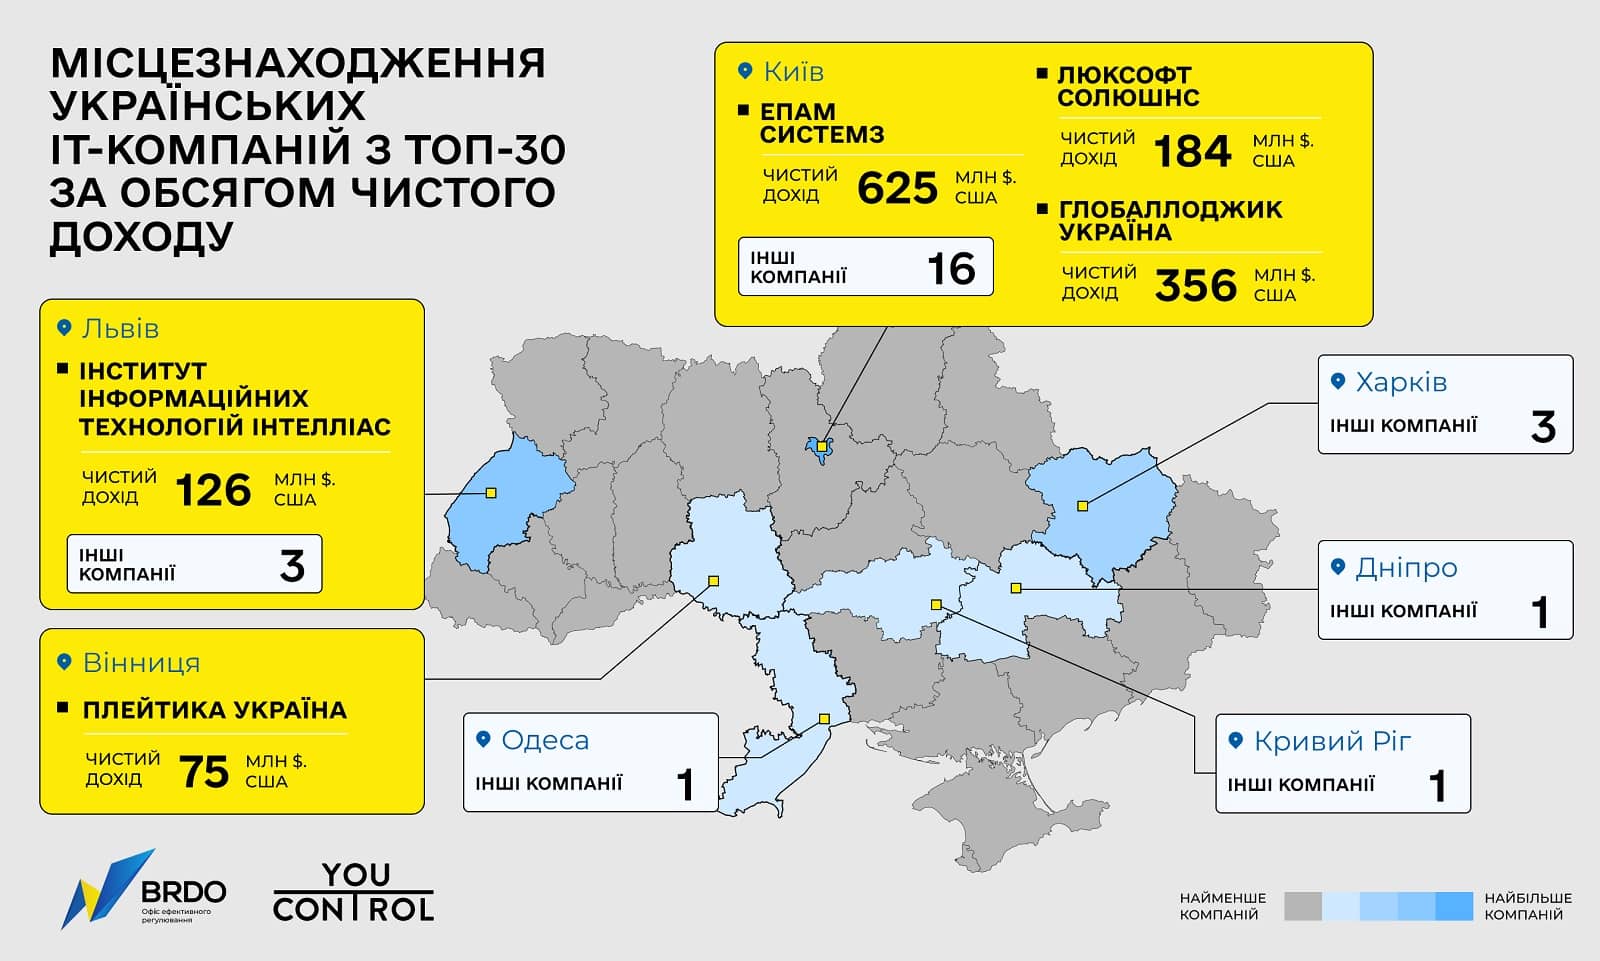 Местоположение украинских IT-компаний с Топ-30 по объему чистого дохода